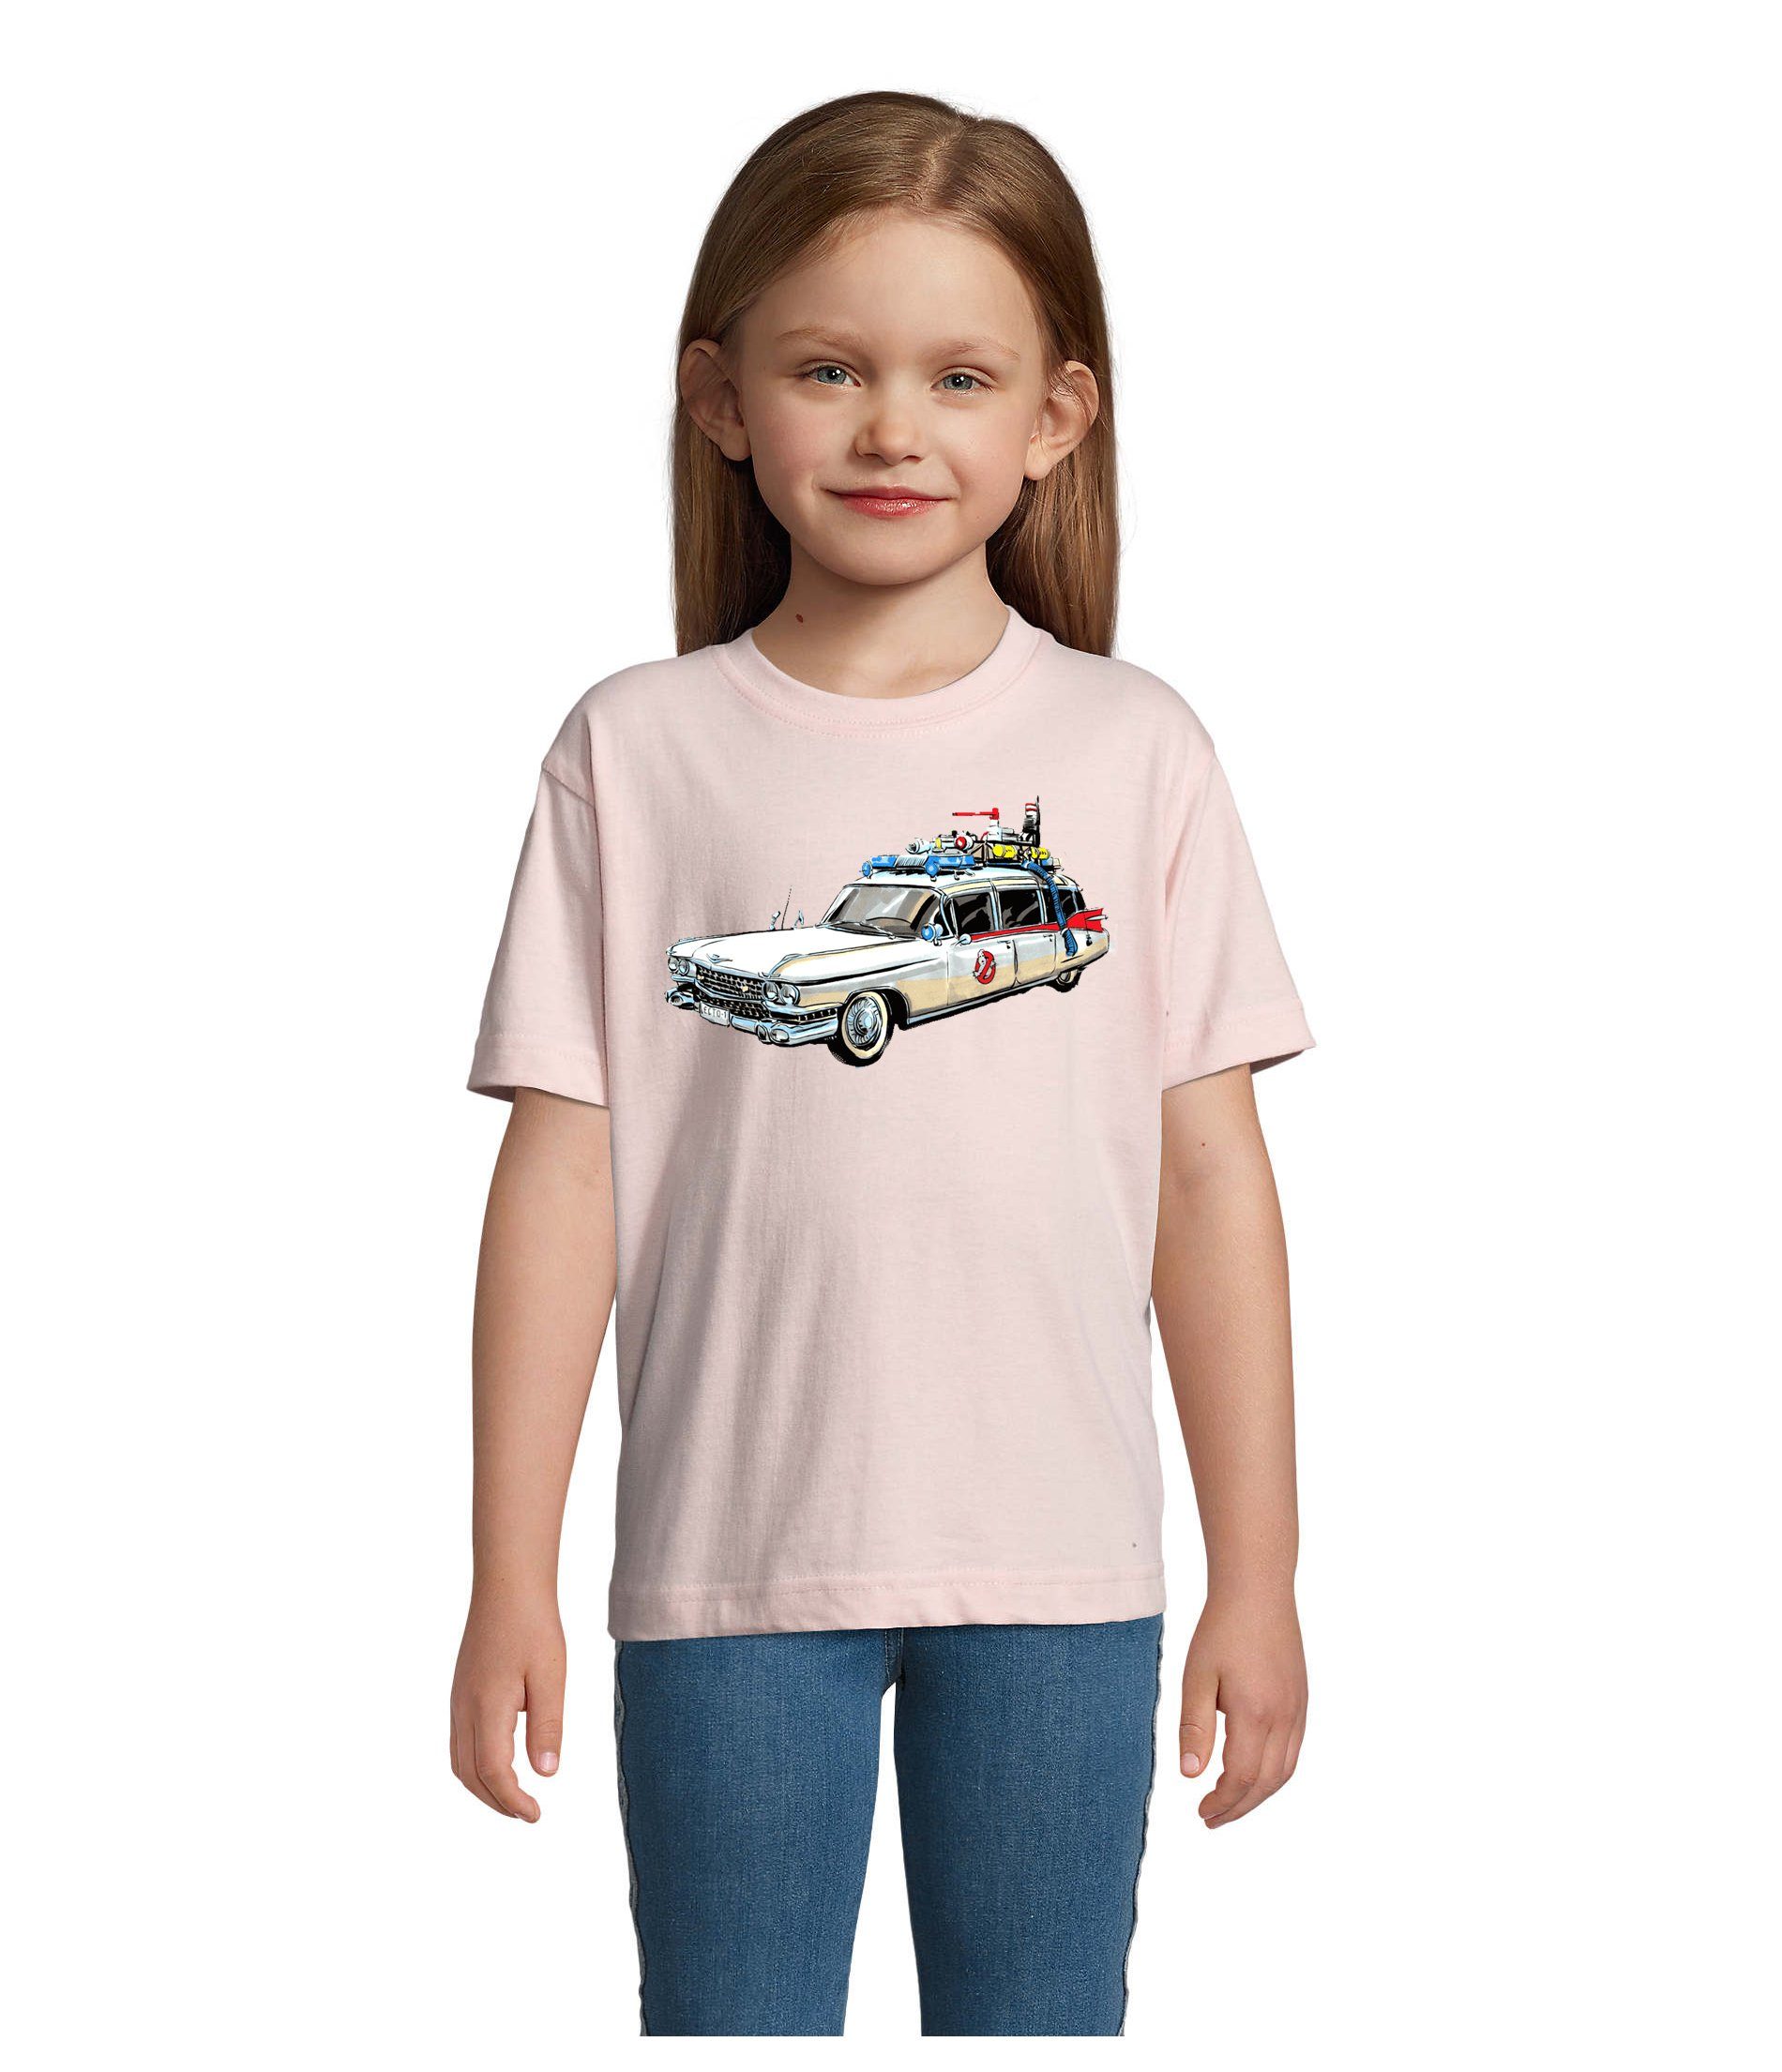 Blondie & in Geister Brownie Auto Ghostbusters Mädchen Film Farben Kinder Geisterjäger vielen & Jungen Rosa T-Shirt